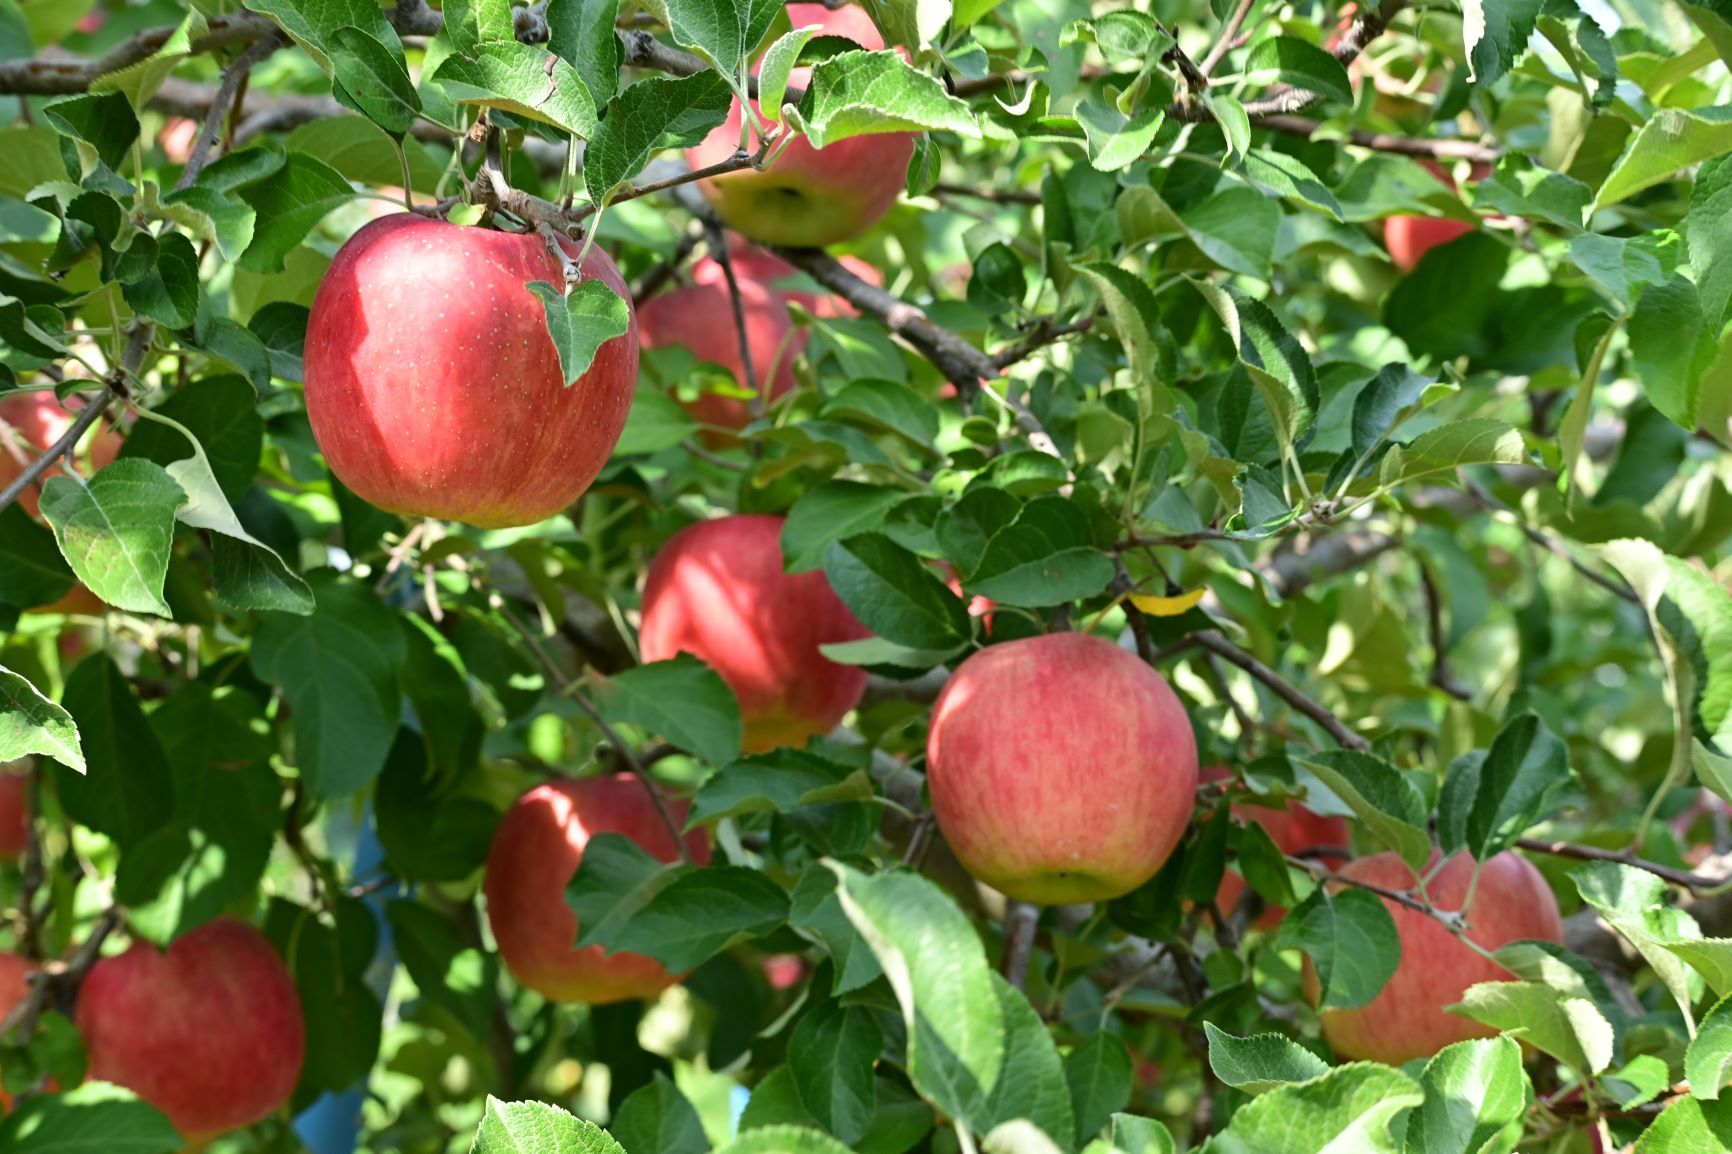 「ひろさきりんご収穫祭」りんご公園で11月5～6日に開催！
飲食ブースの出店やお菓子作りなどの体験イベントを多数ご用意